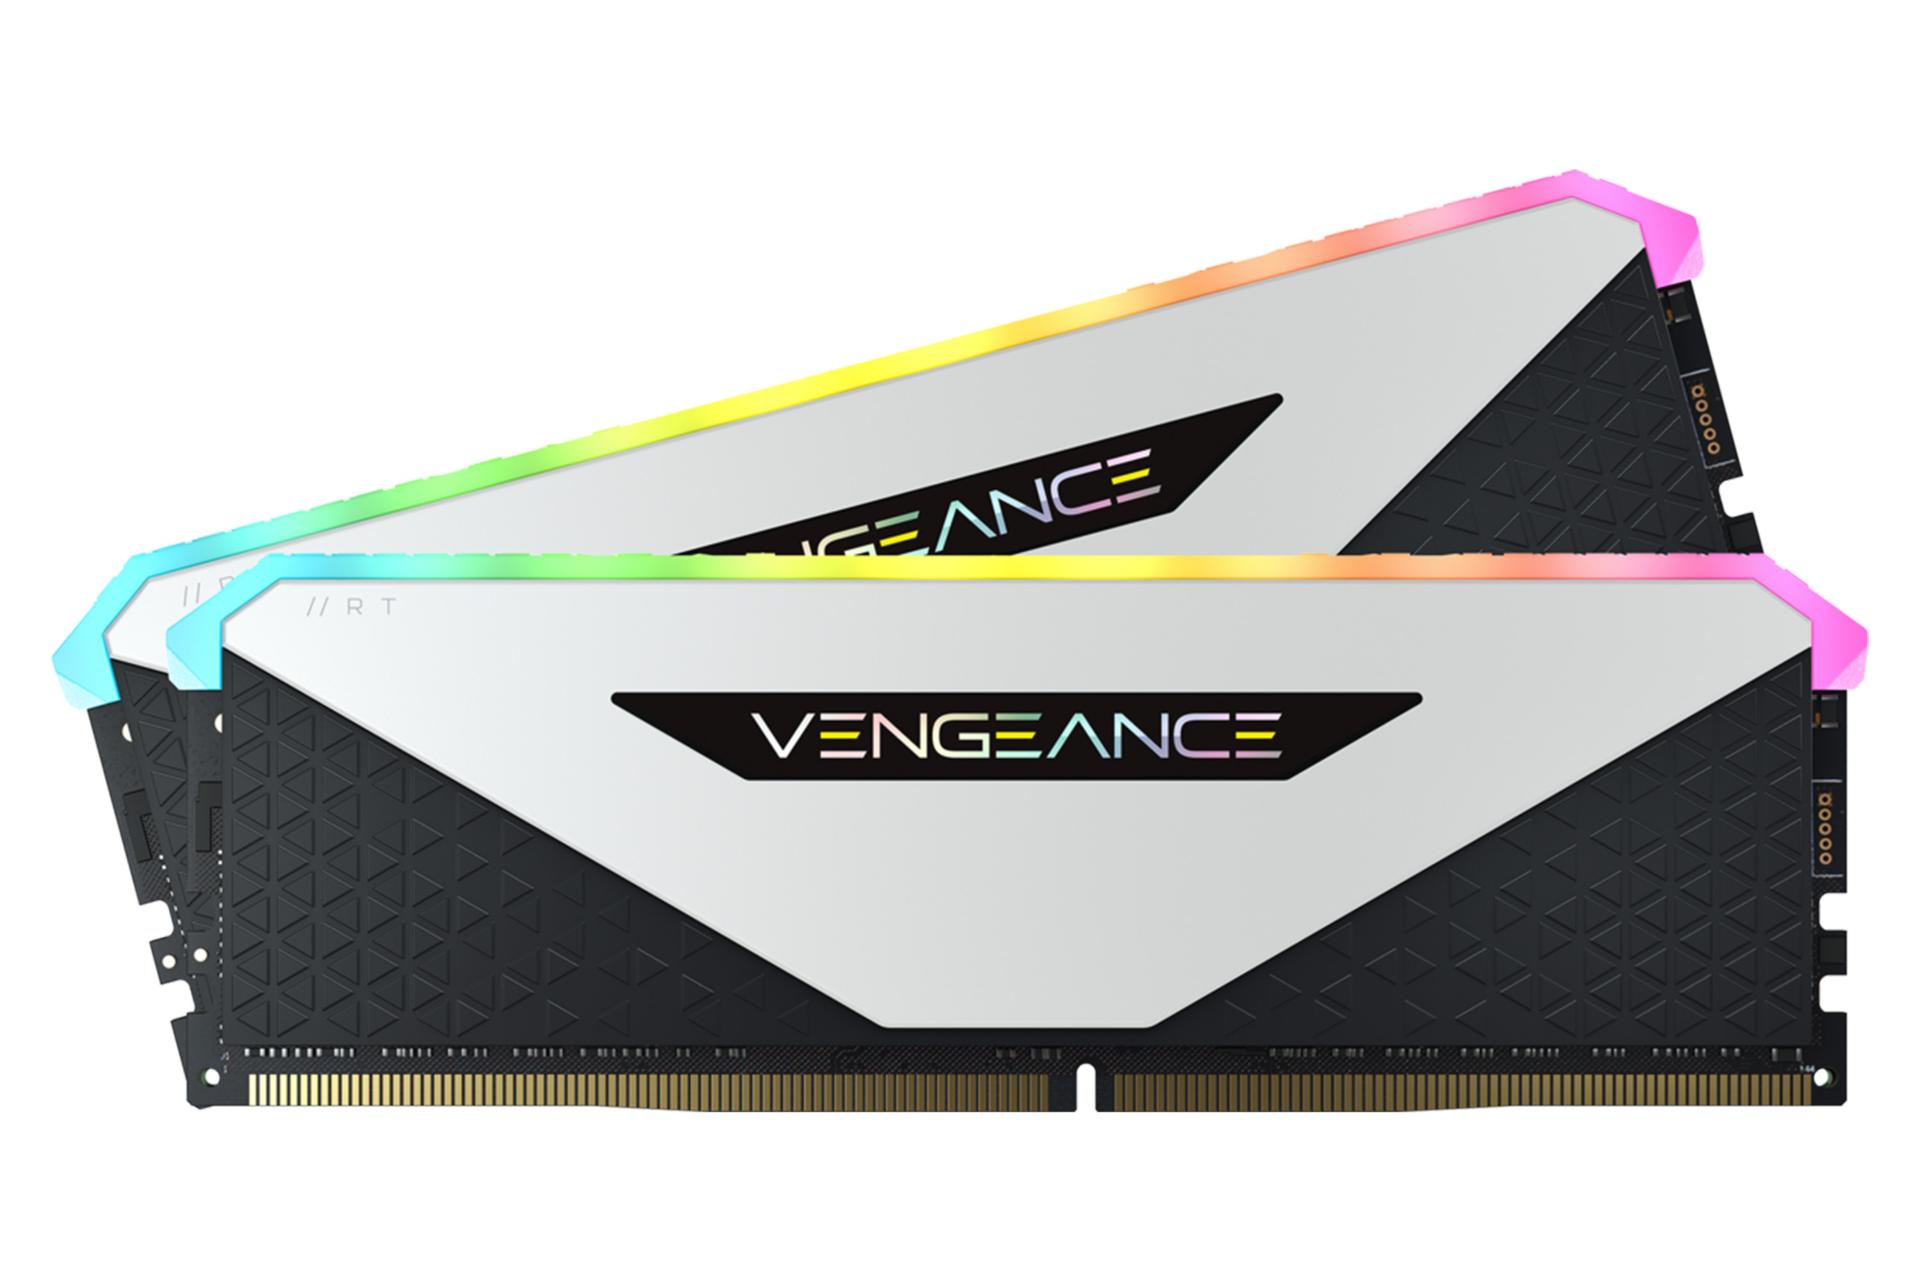  رم کورسیر VENGEANCE RGB RT ظرفیت 16 گیگابایت (2x8) از نوع DDR4-3600 رنگ سفید